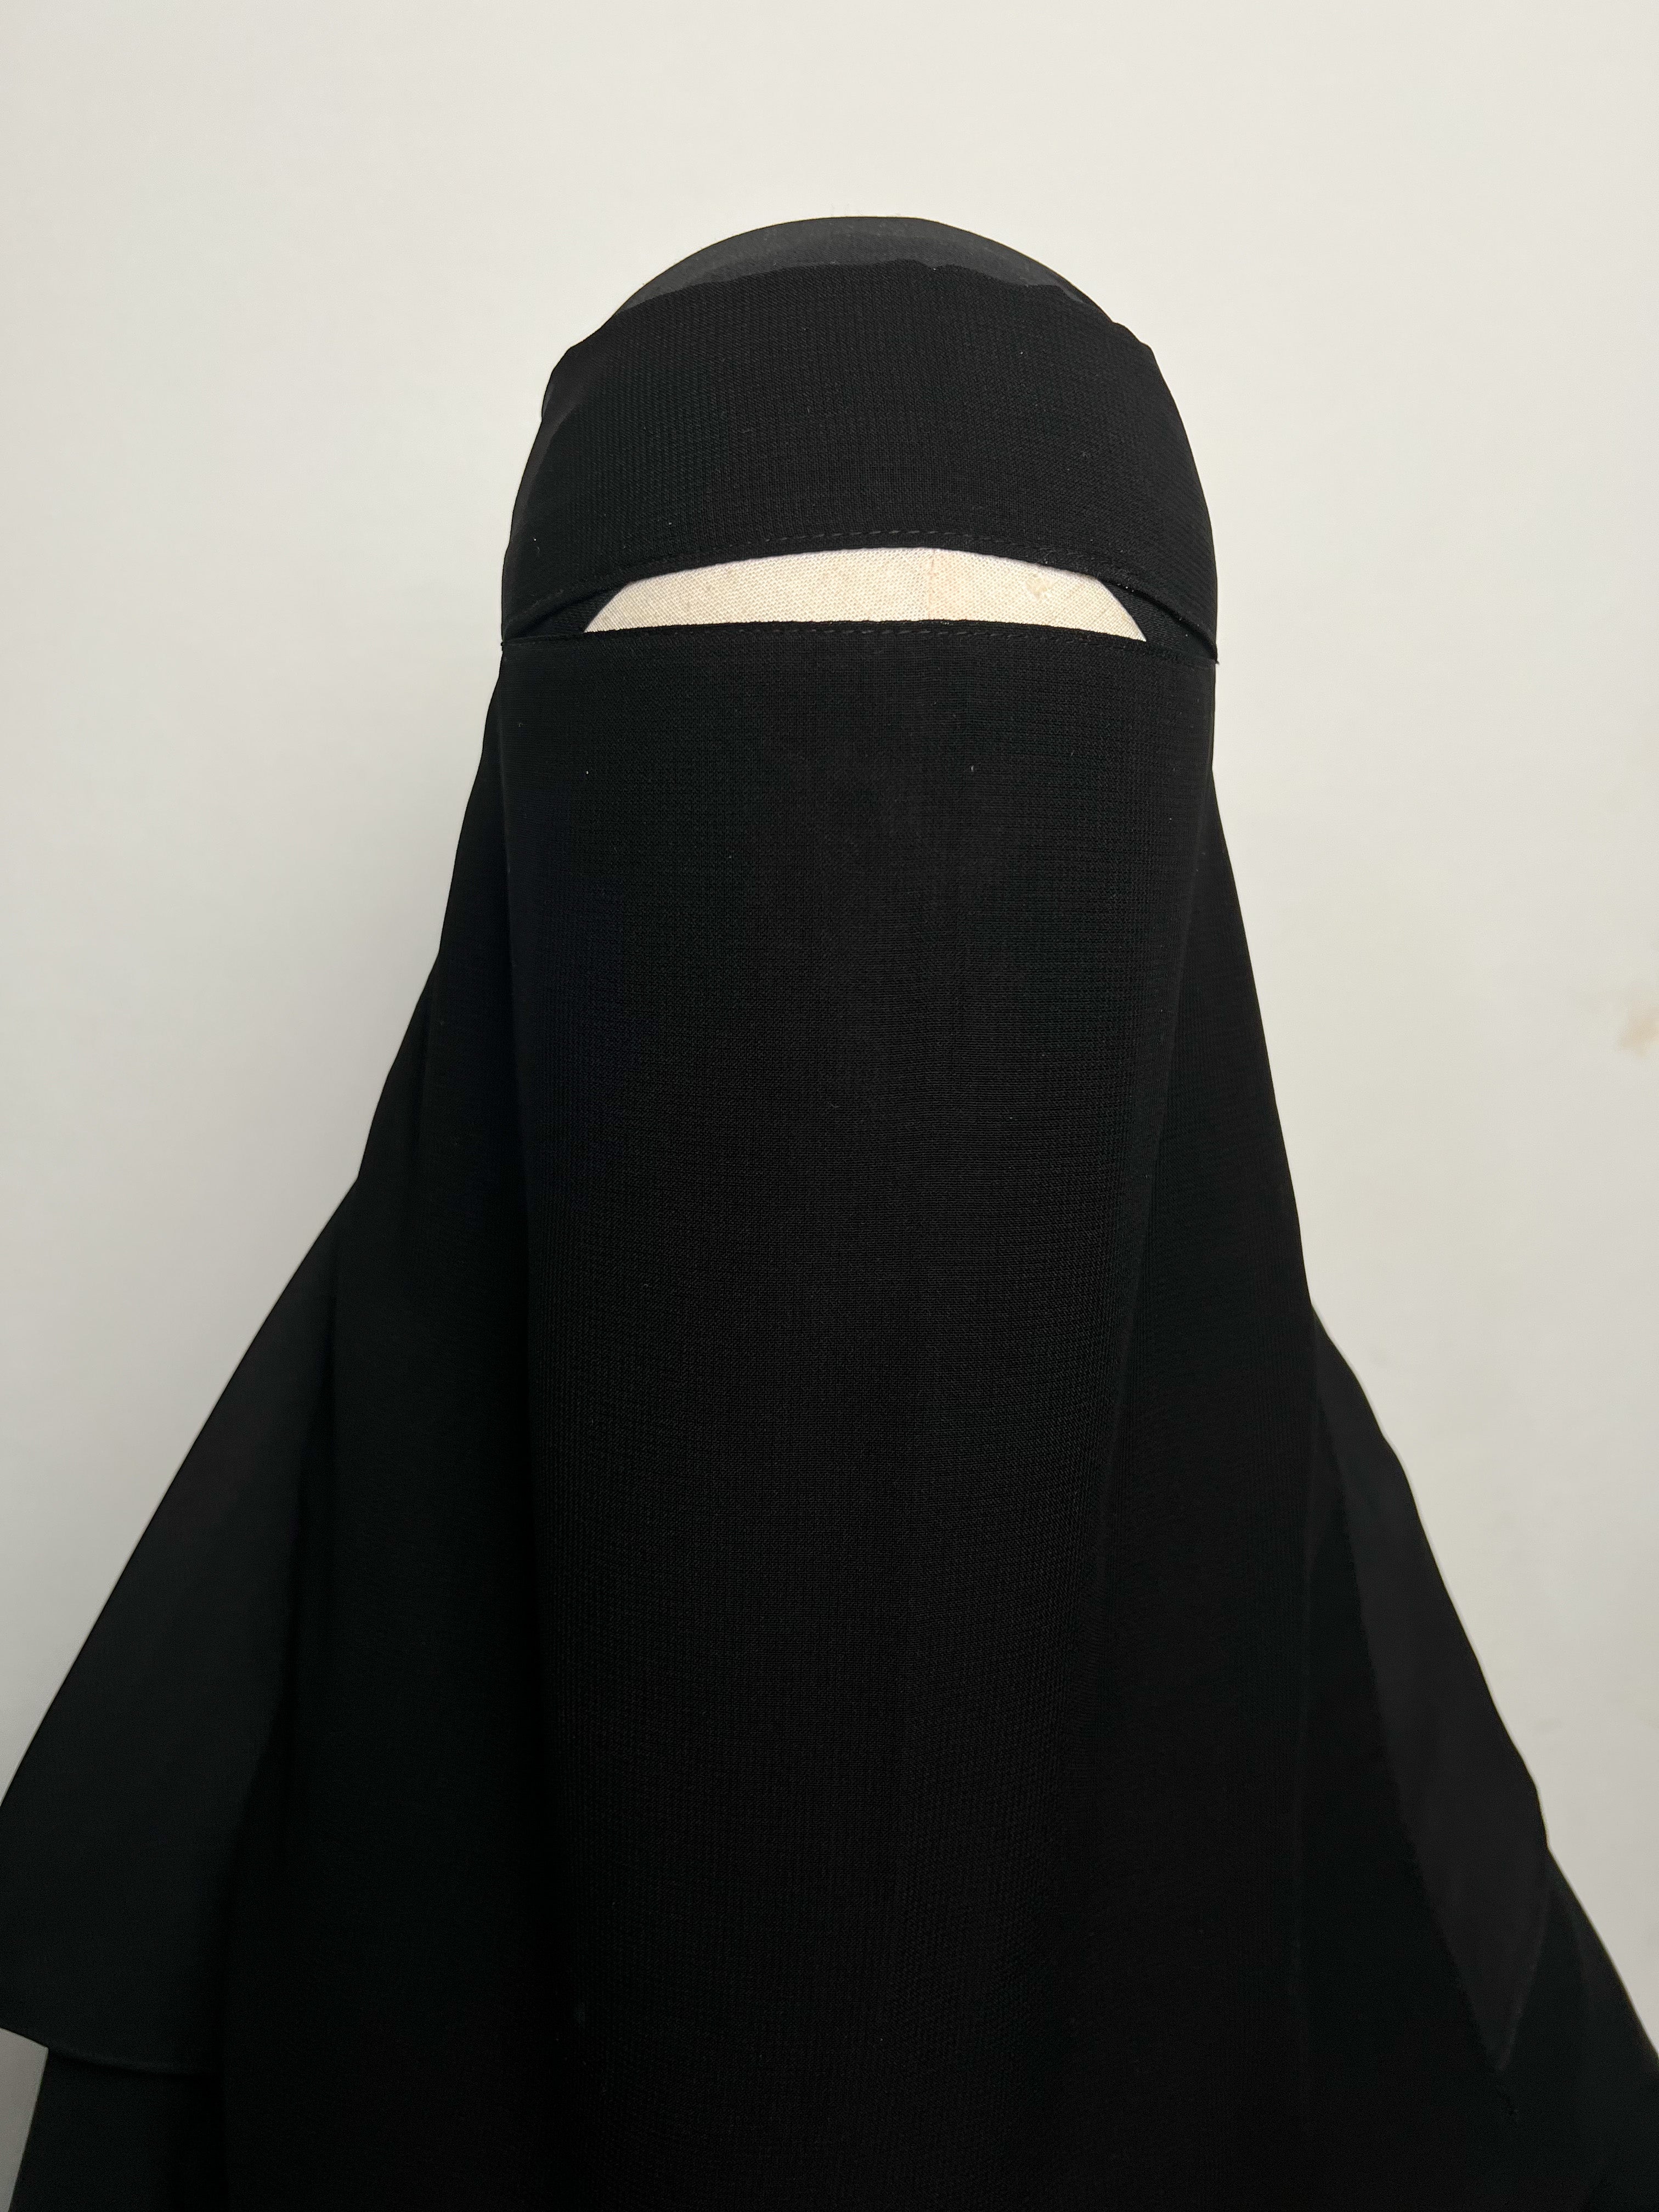 Niqab Seoudi Tesnim